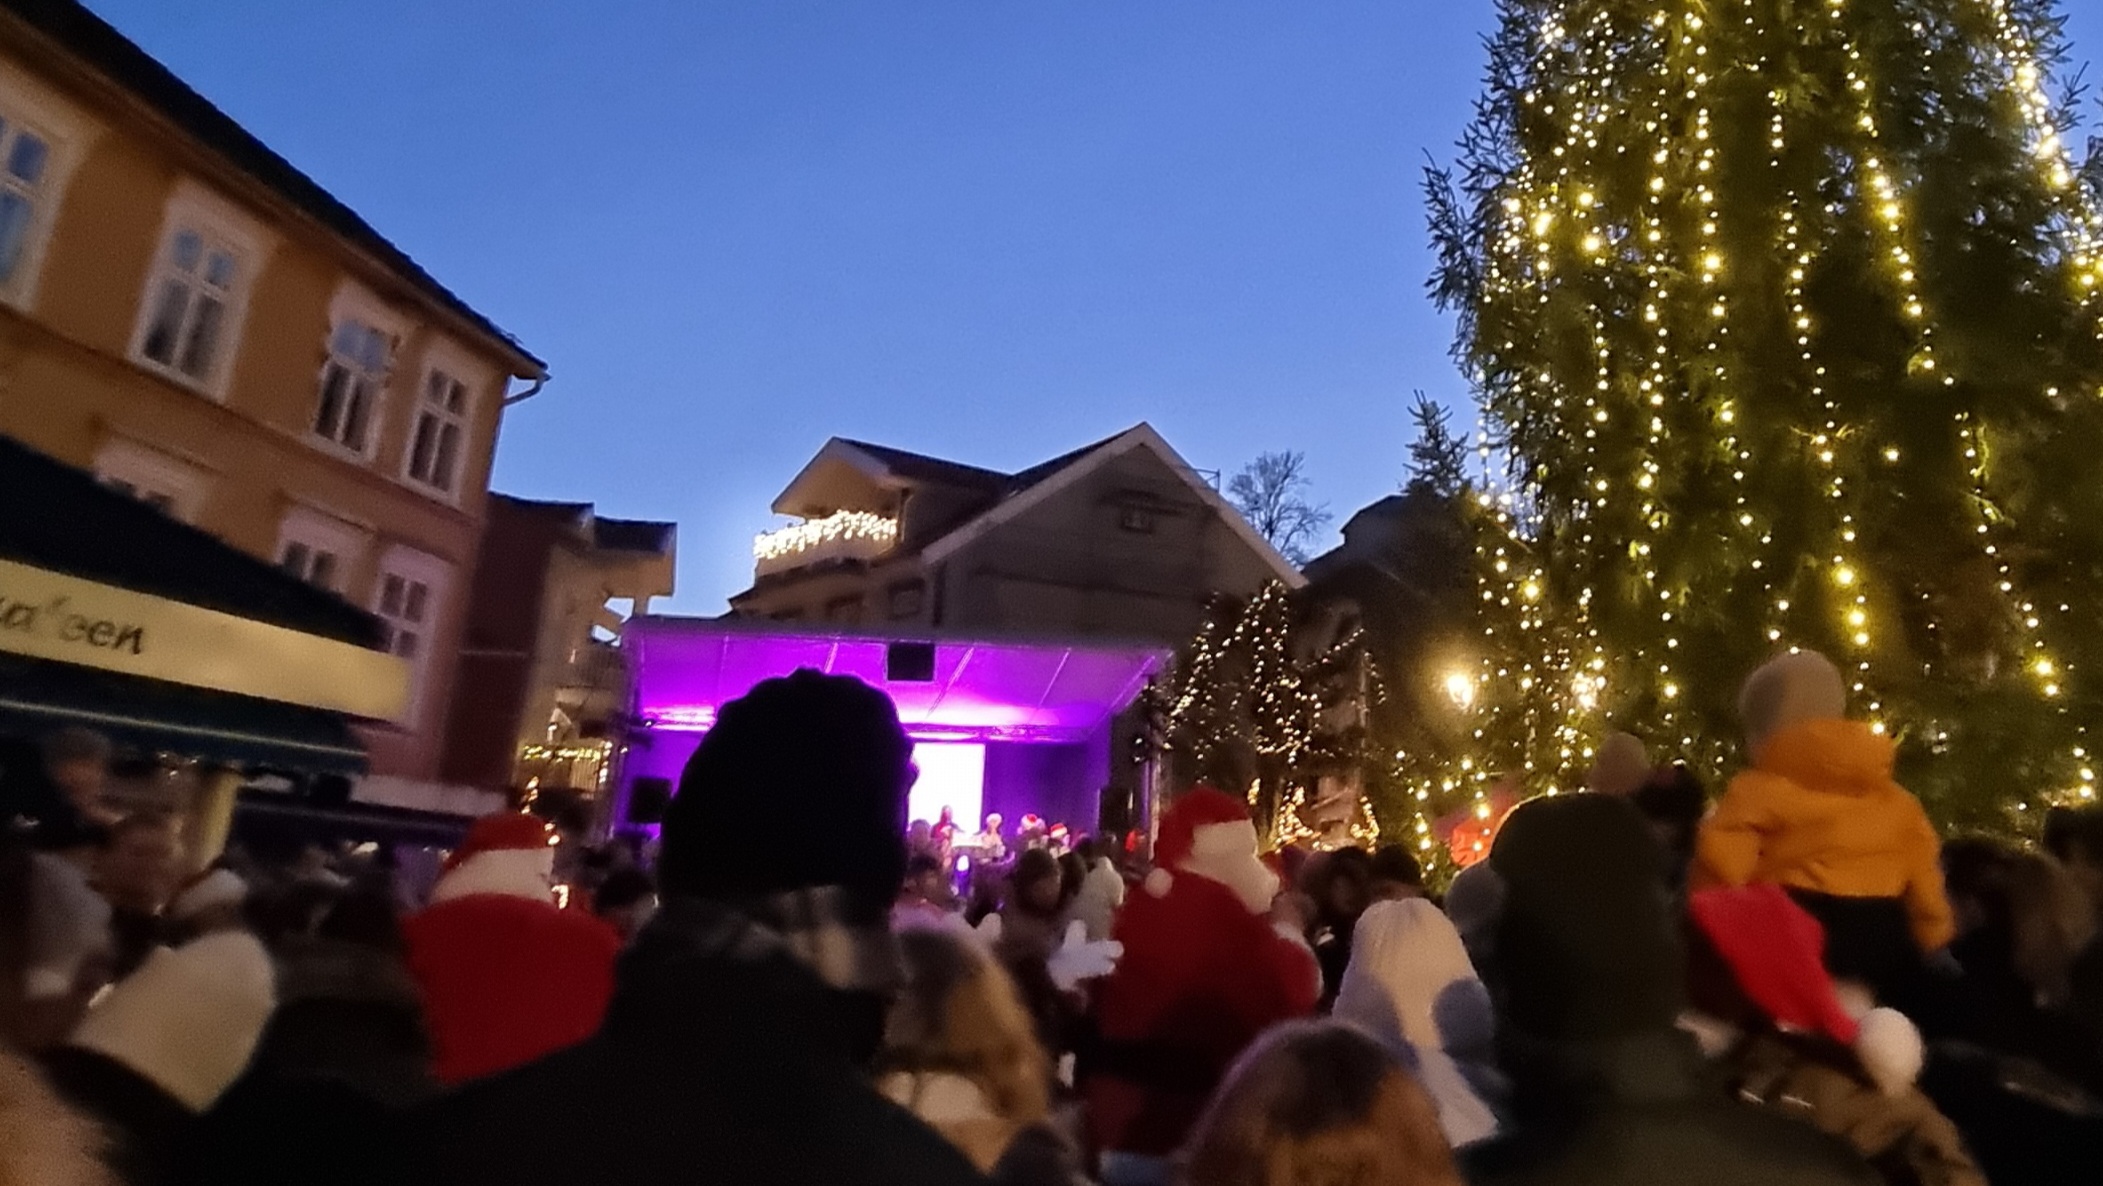 Folksomt på Kragerø torv, julegran og utekino